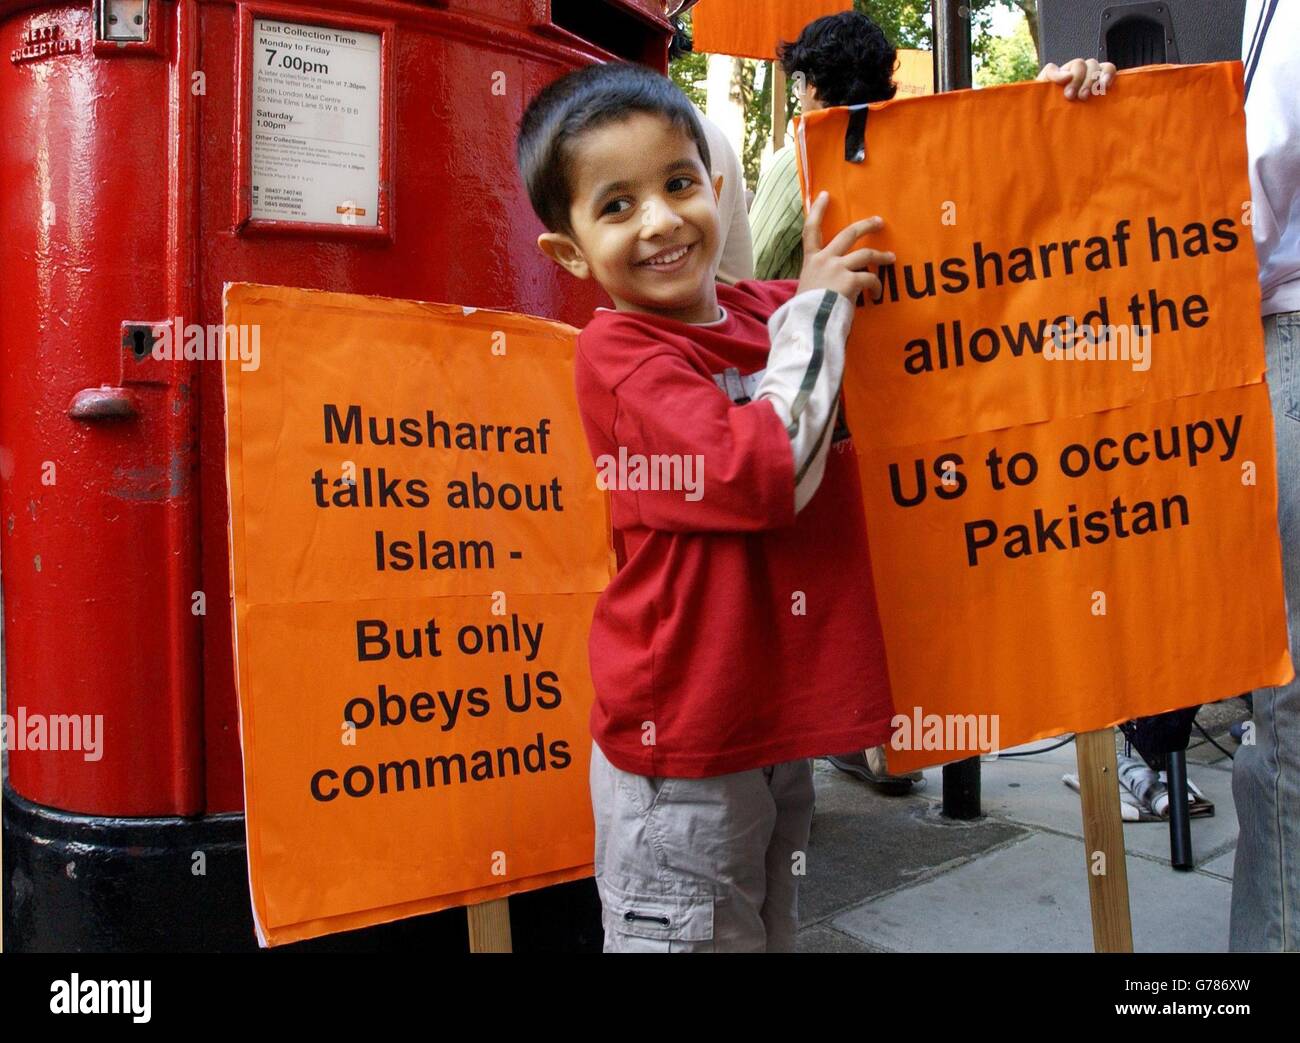 Un petit garçon joue alors que les musulmans pakistanais britanniques se rassemblent pour protester contre les politiques du président pakistanais Musharraf, près du haut-commissariat du Pakistan dans le centre de Londres. Les manifestants appelaient à une plus grande indépendance vis-à-vis des États-Unis à l'occasion de ce qui est aujourd'hui, le jour de l'indépendance du Pakistan. Banque D'Images